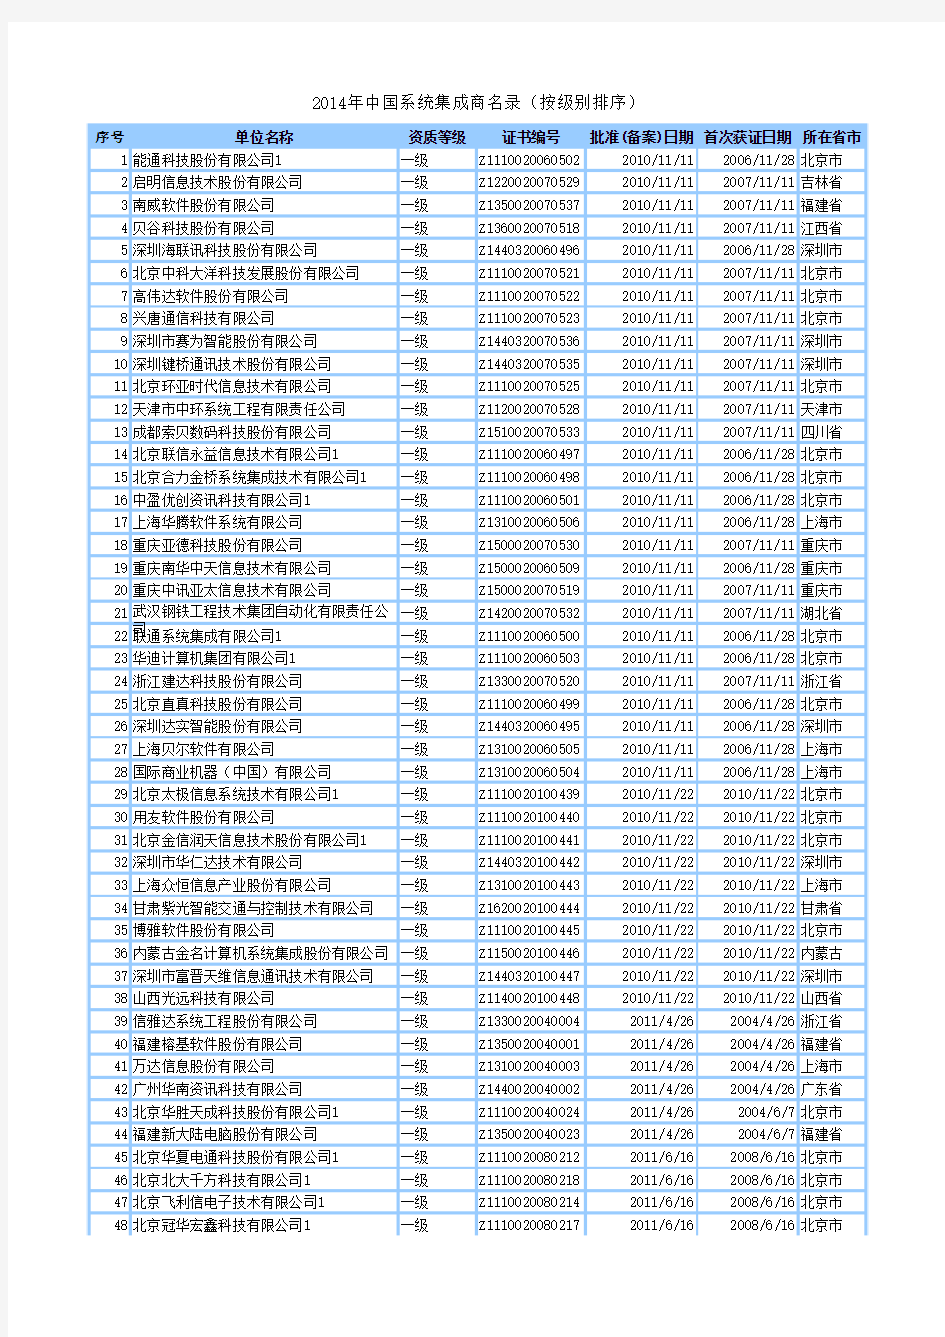 2016年中国系统集成商名单大全(最新) (1)